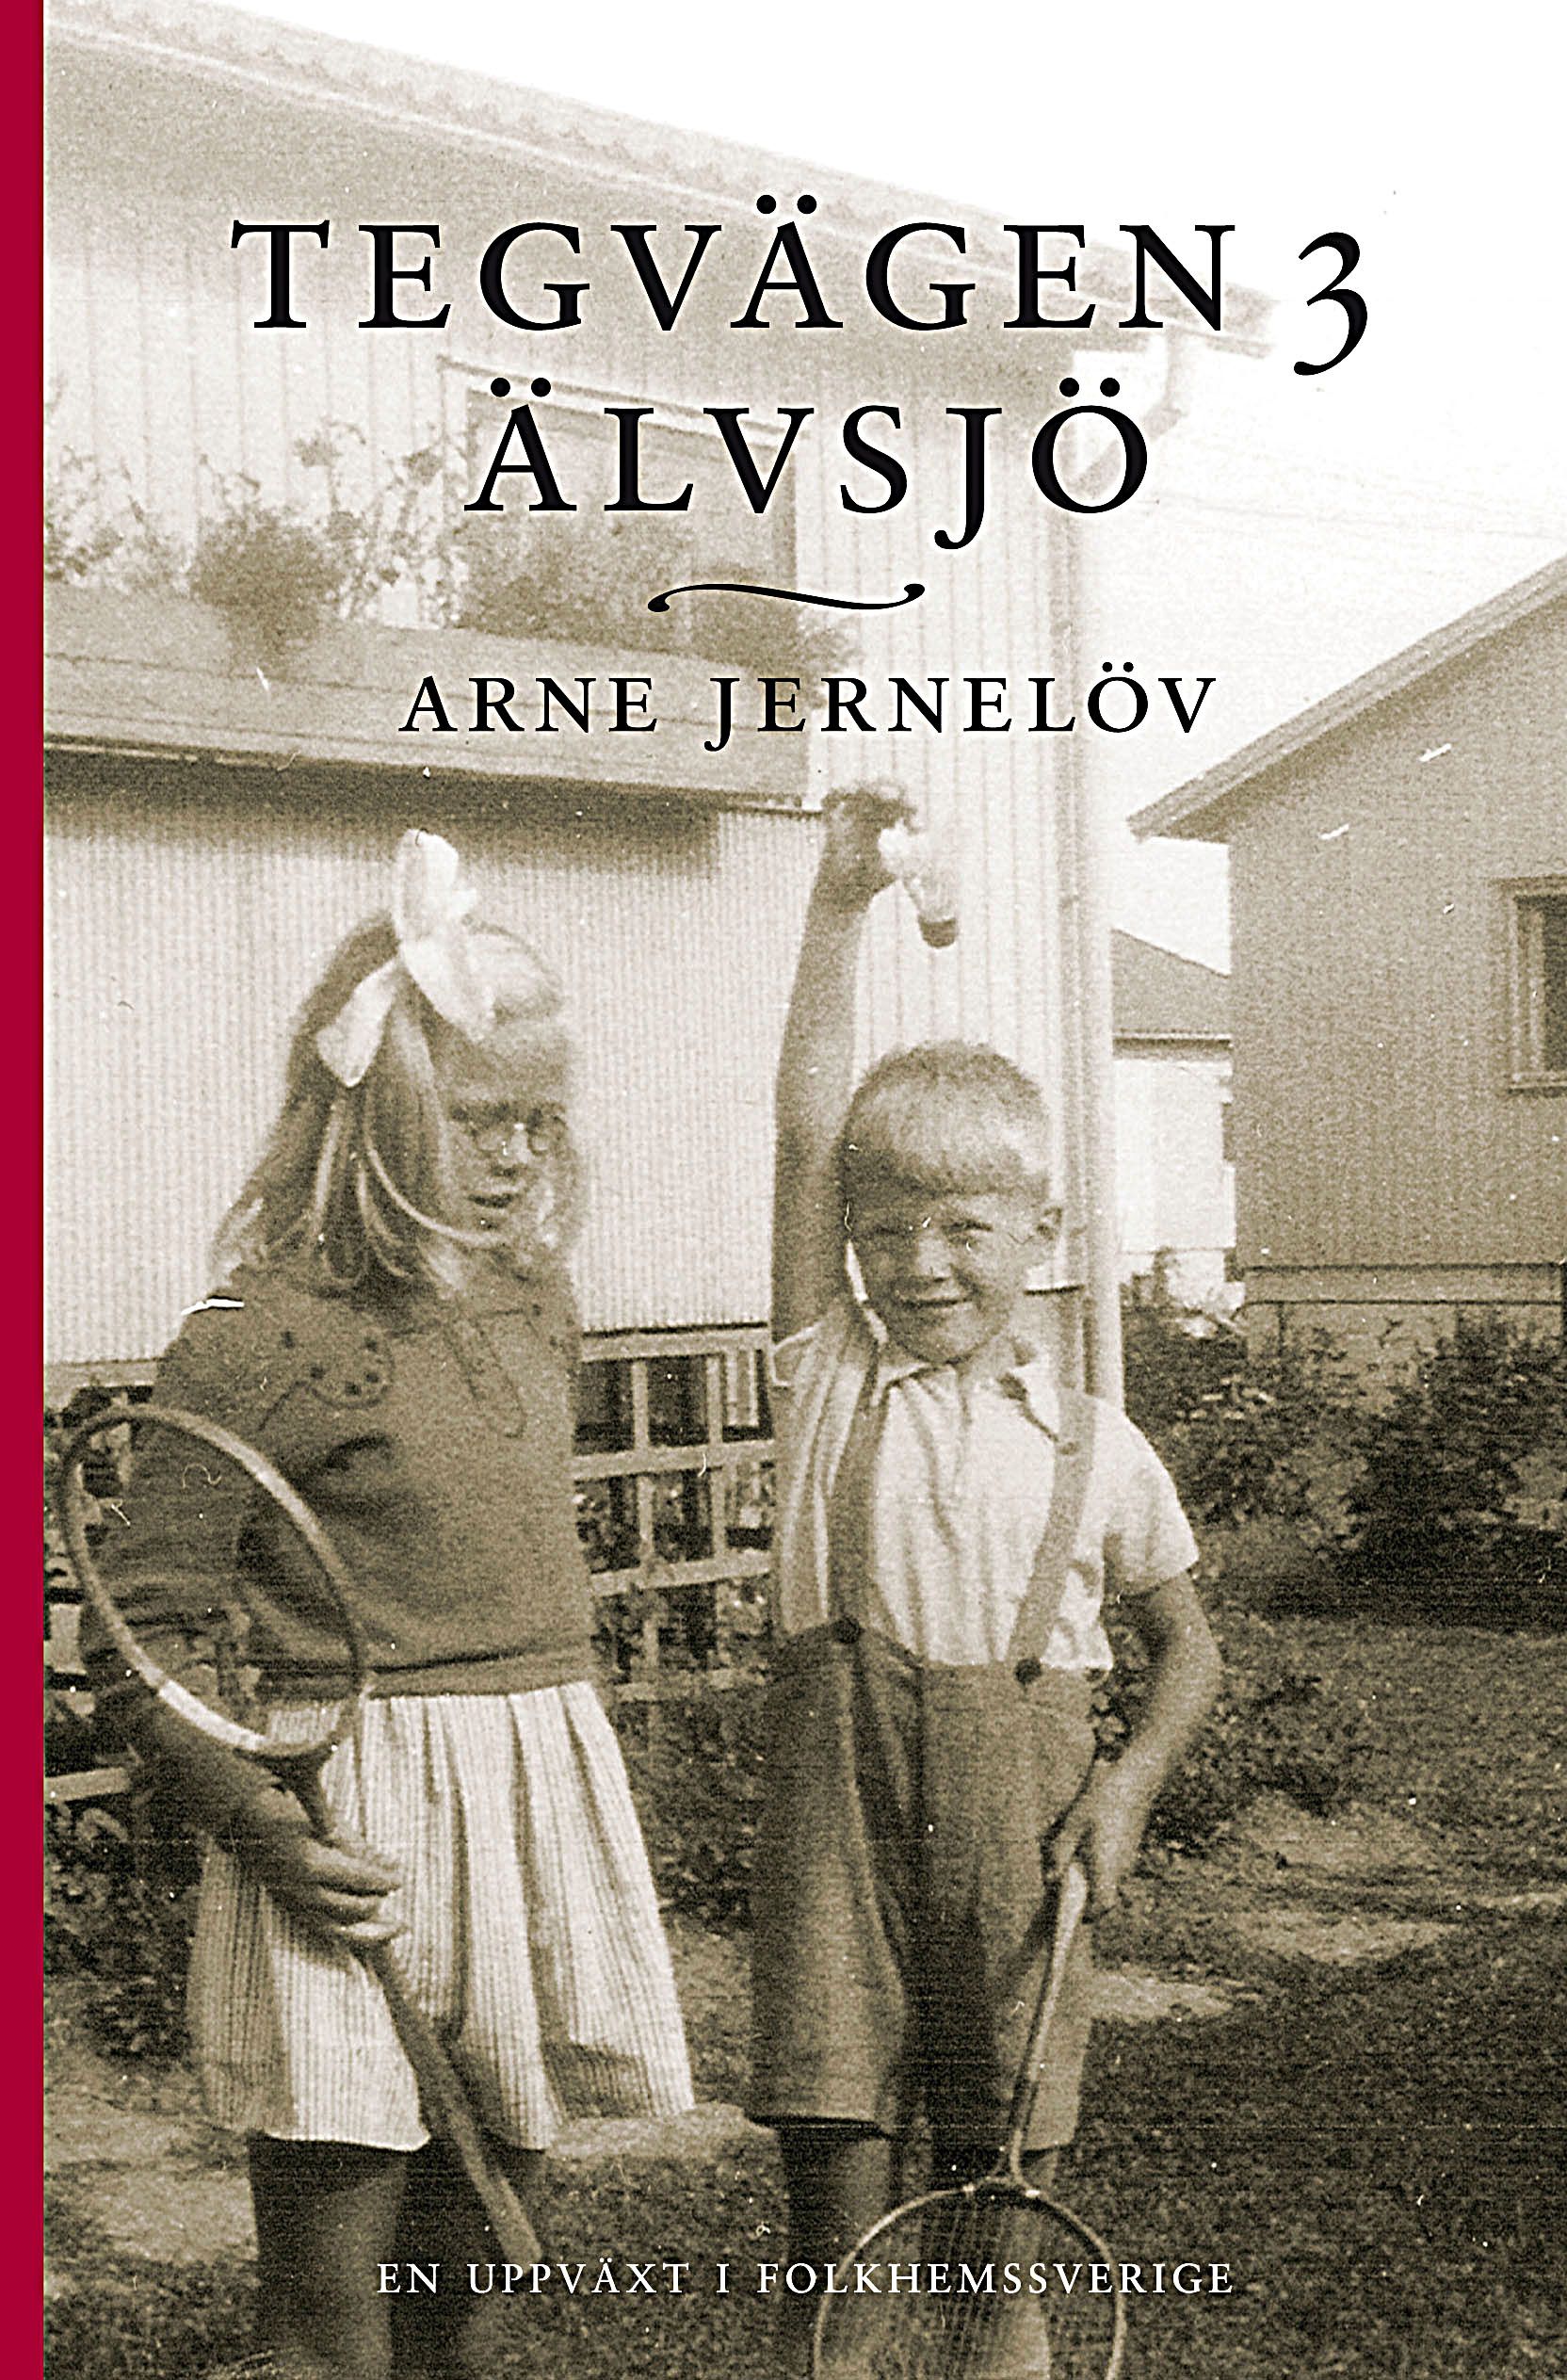 Tegvägen 3, Älvsjö, eBook by Arne Jernelöv